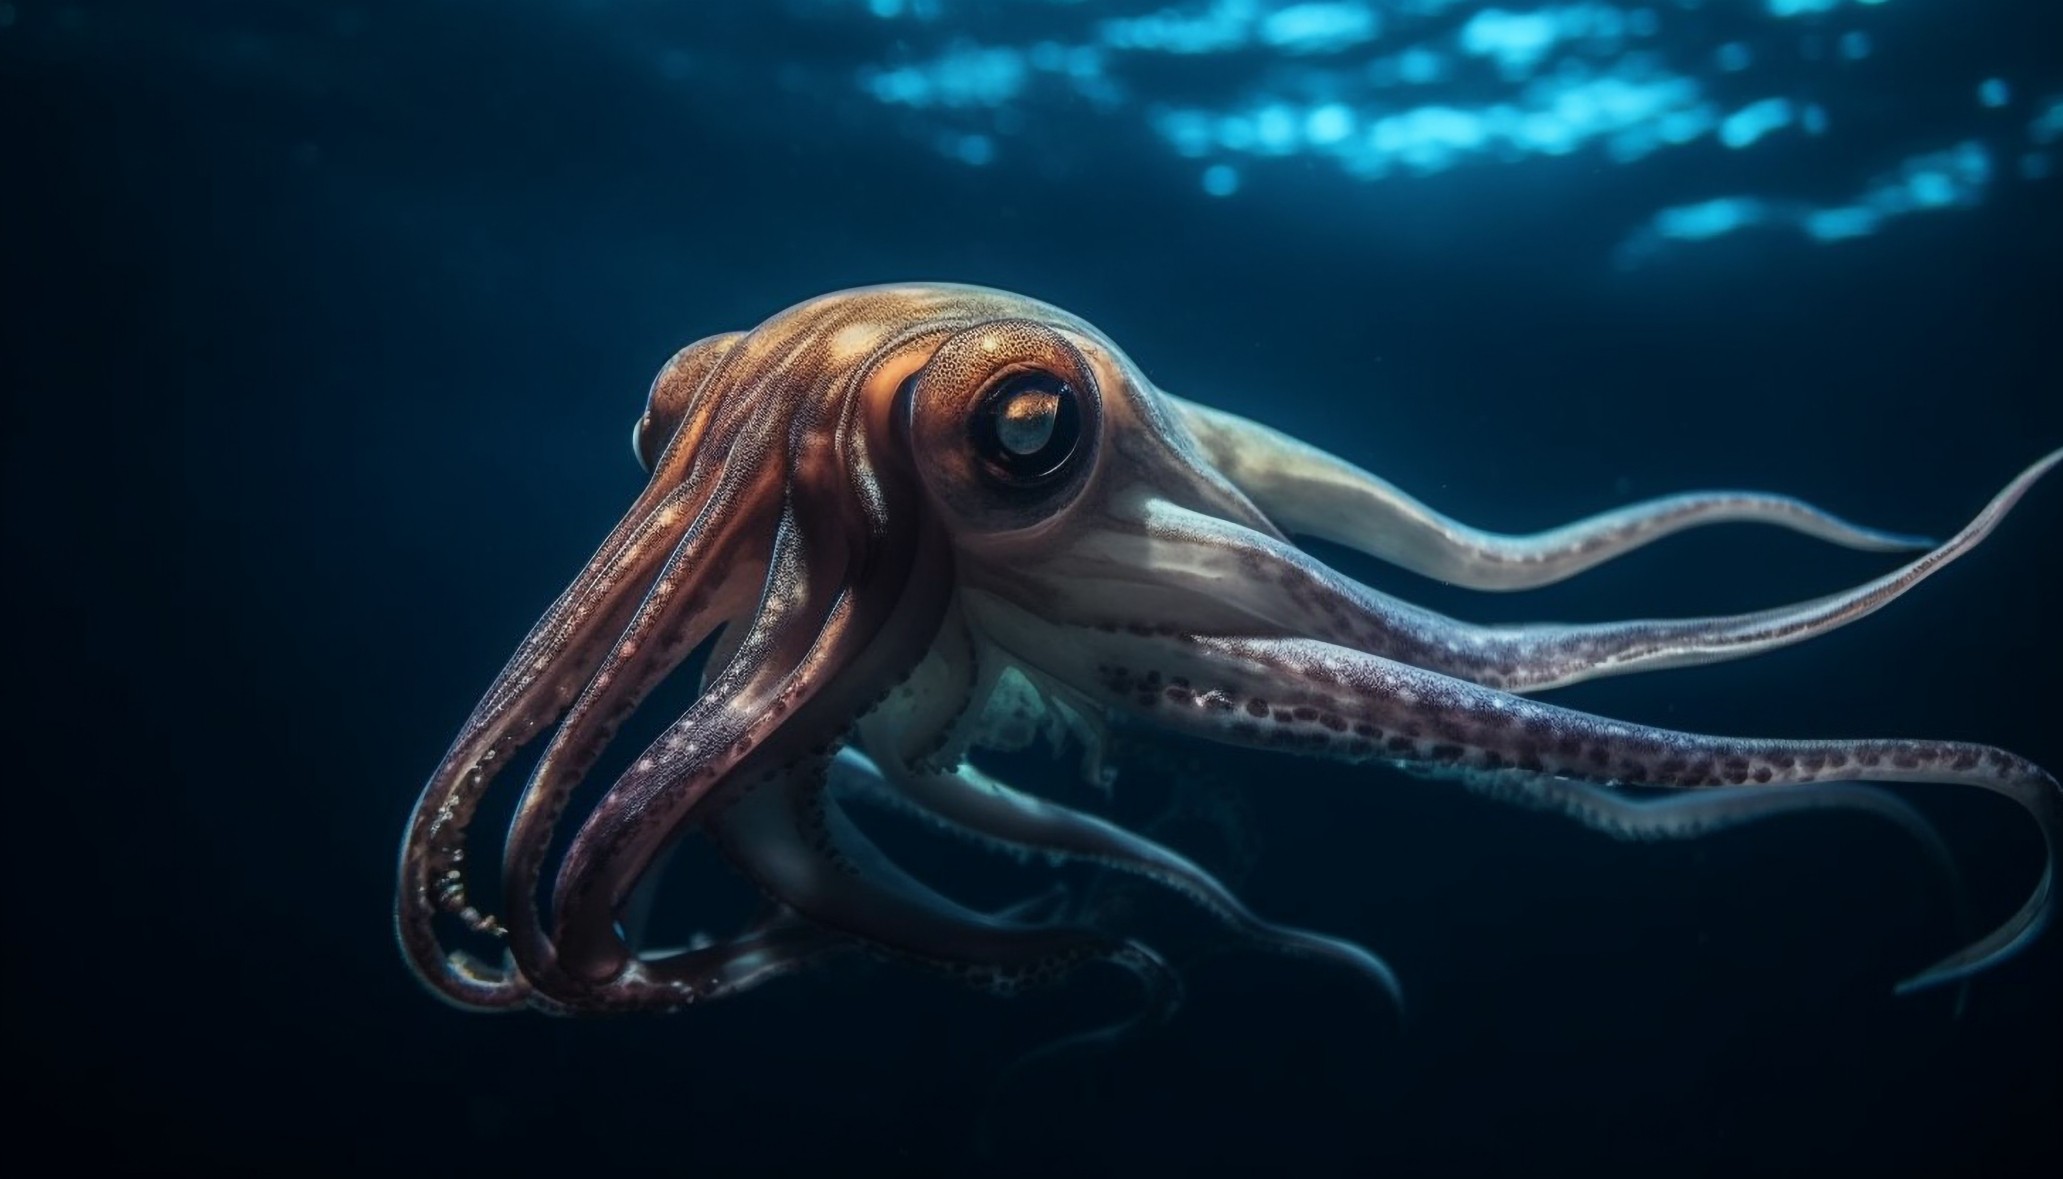 Octopus aliens extraterrestrial octopuses 